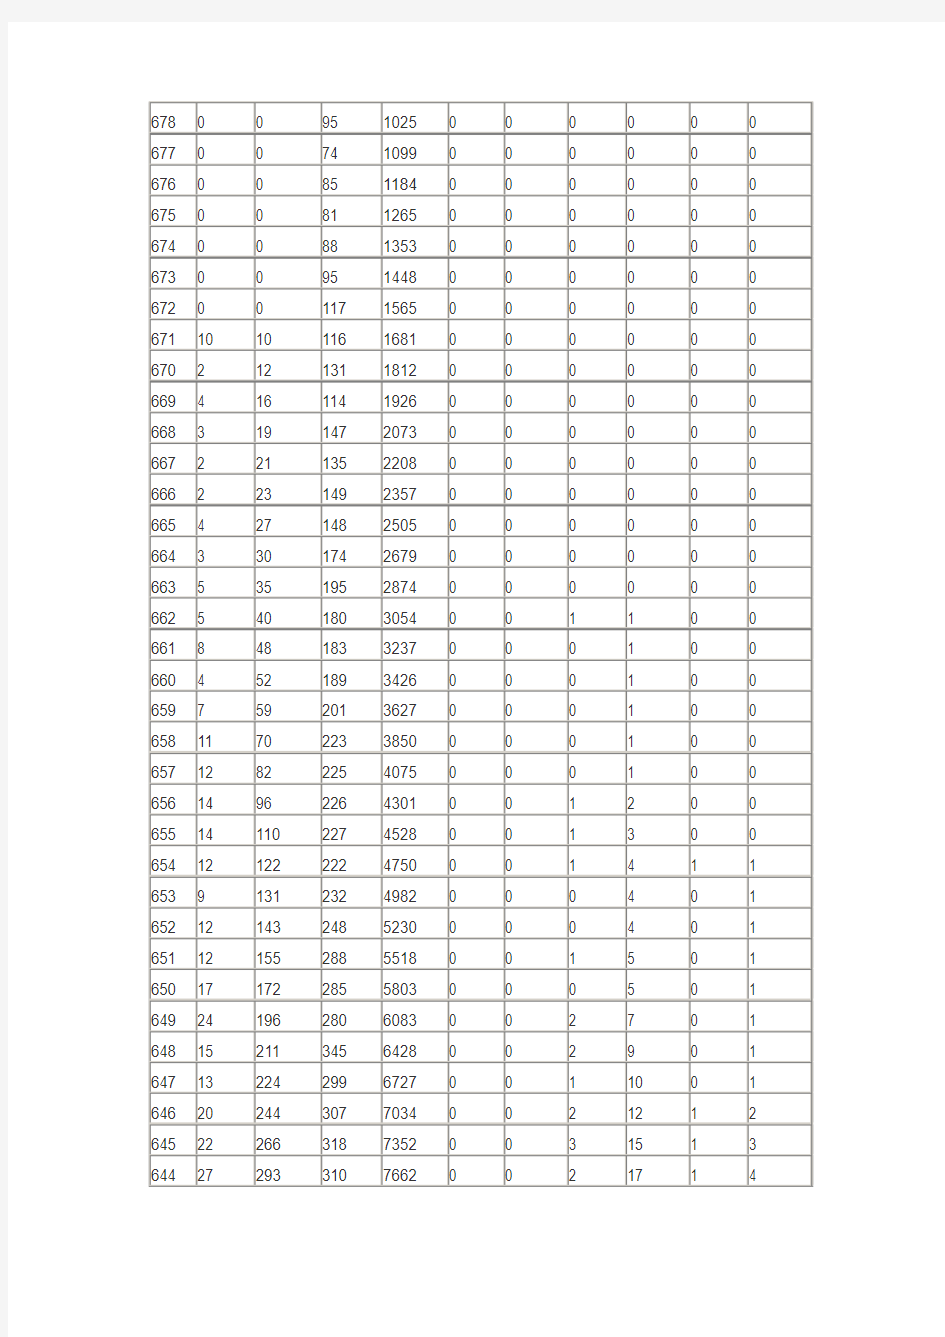 2015年山东高考理科成绩一分一段表